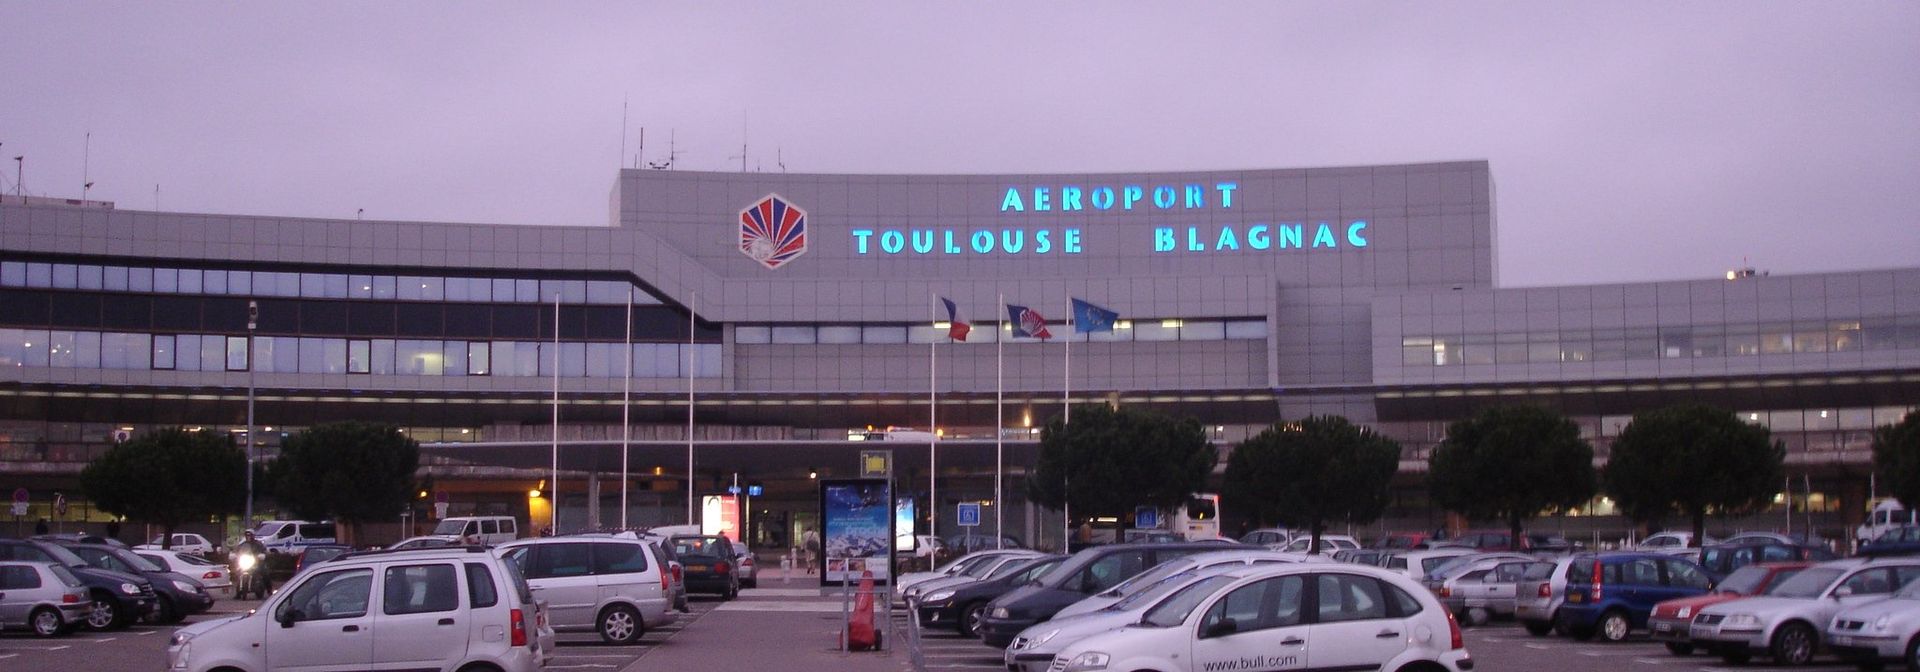 14 nouvelles destinations pour l'aéroport de Toulouse